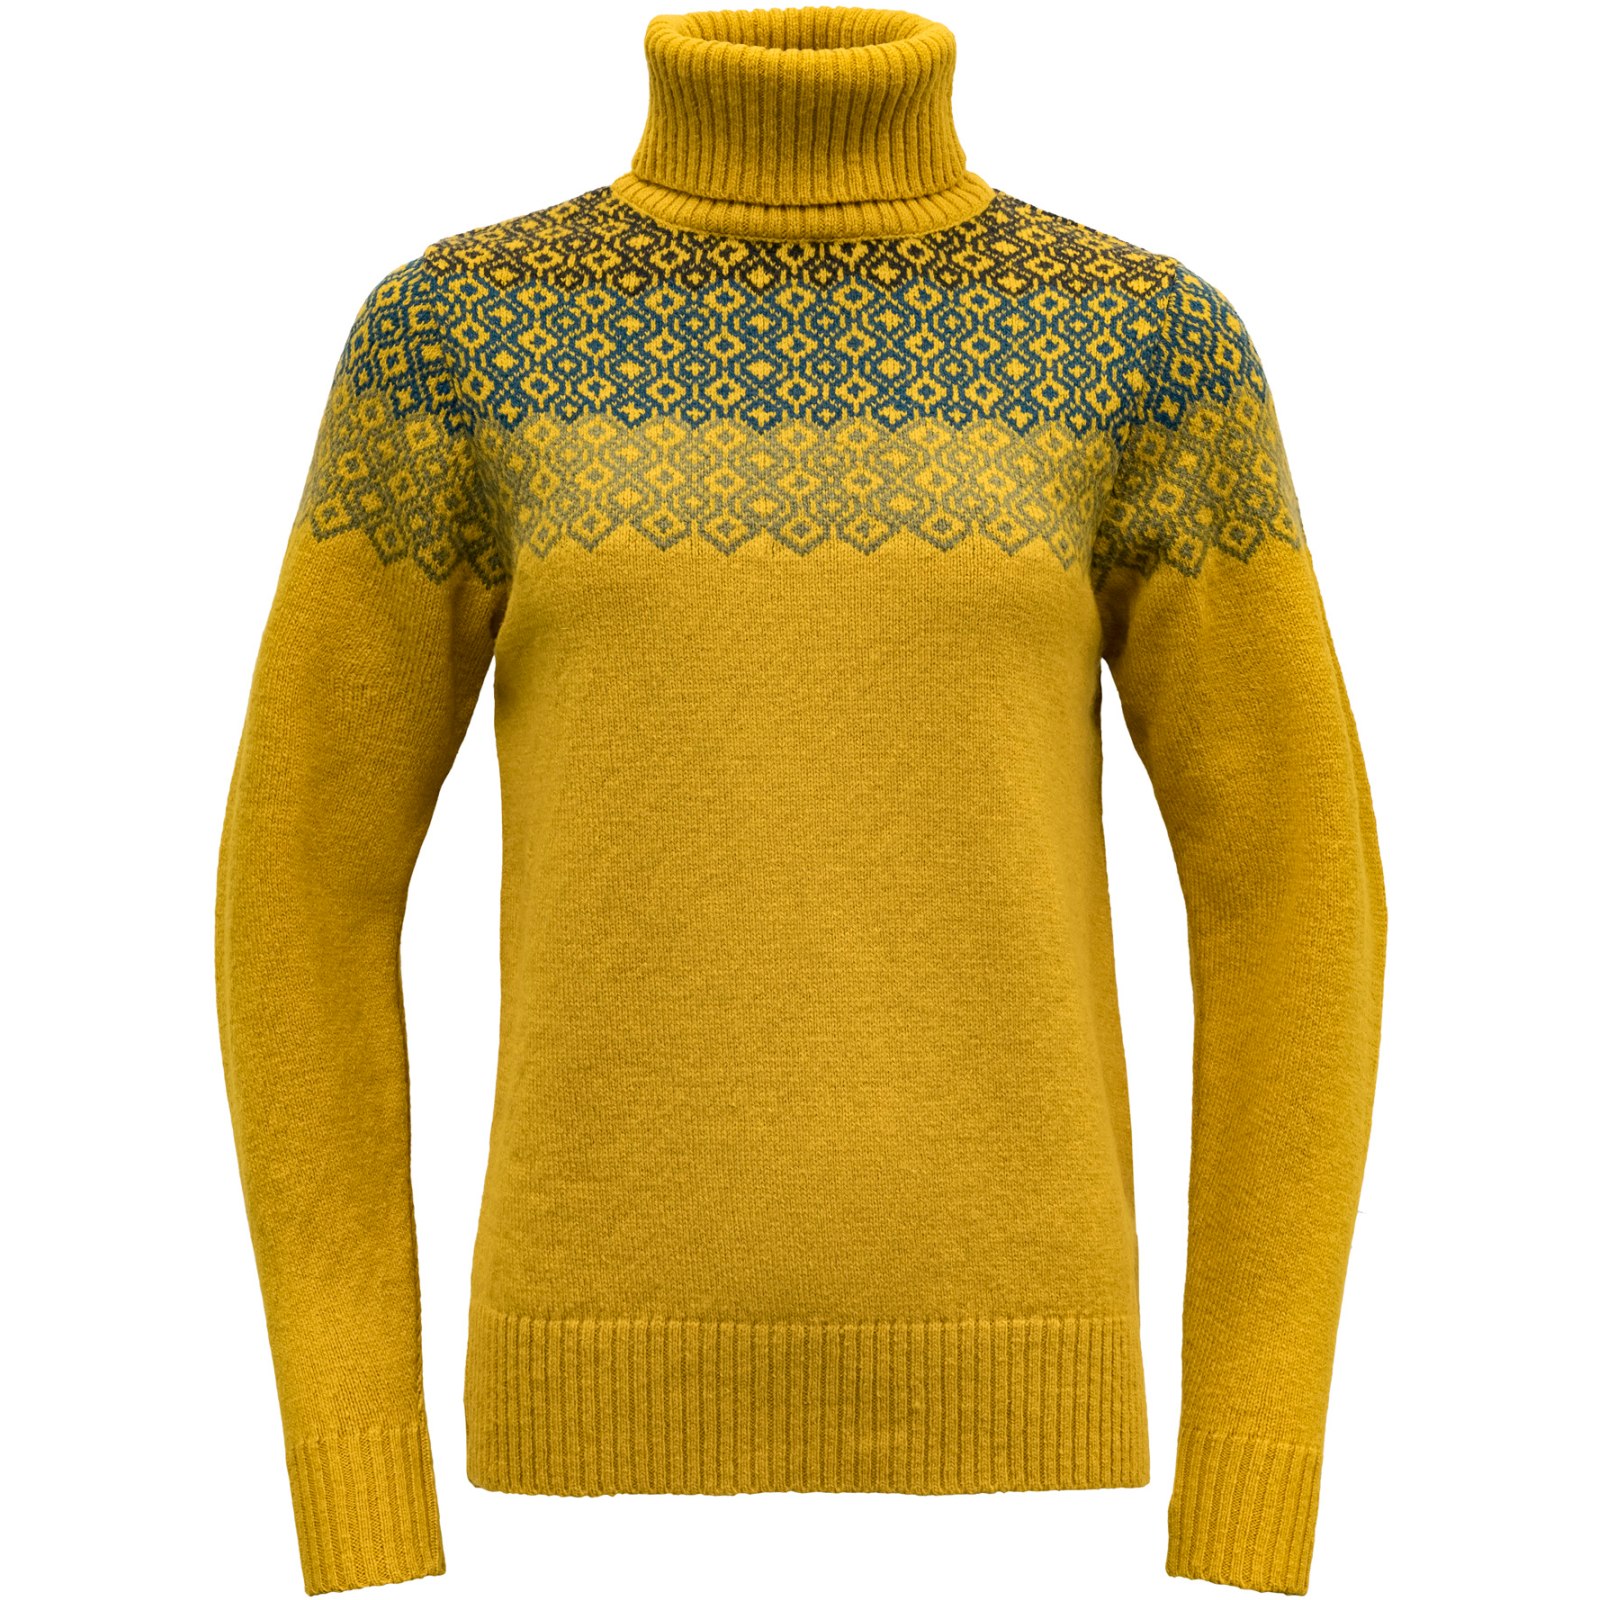 Produktbild von Devold Syvde Wool Rollkragen-Pullover Damen - 058 Arrowwood